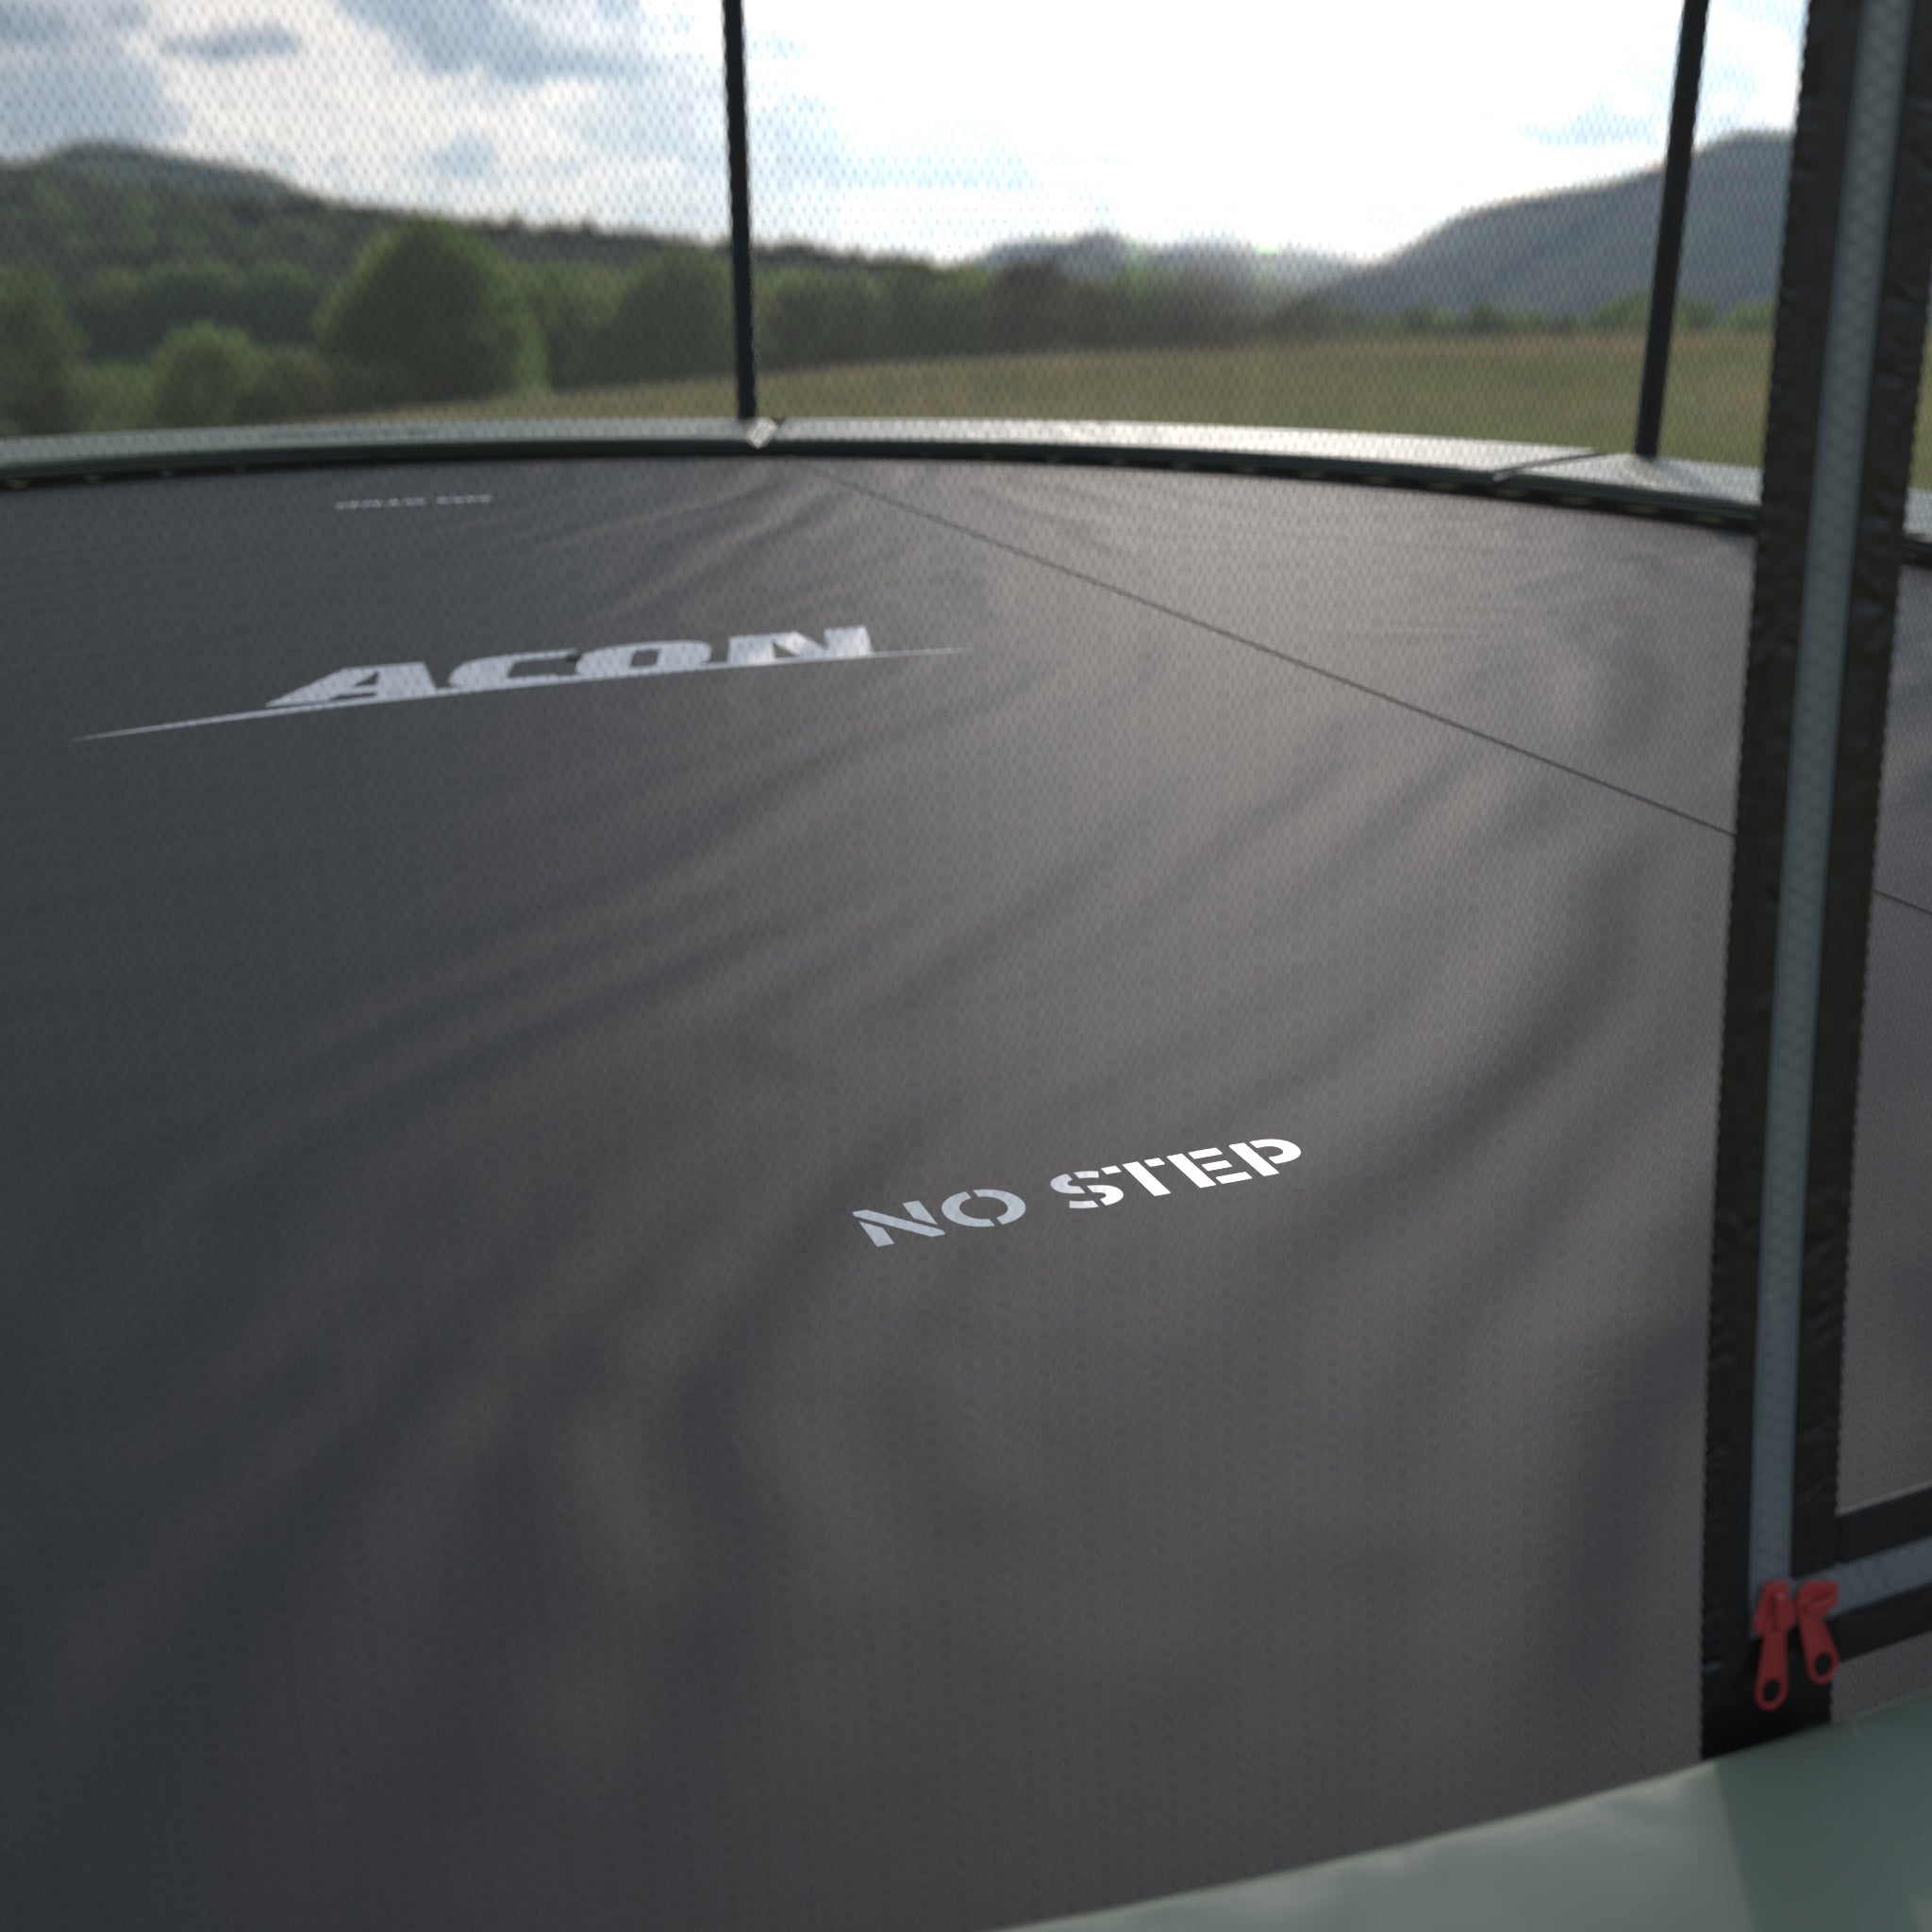 Yksityiskohta Acon trampoliinin sääsuojasta asennettuna